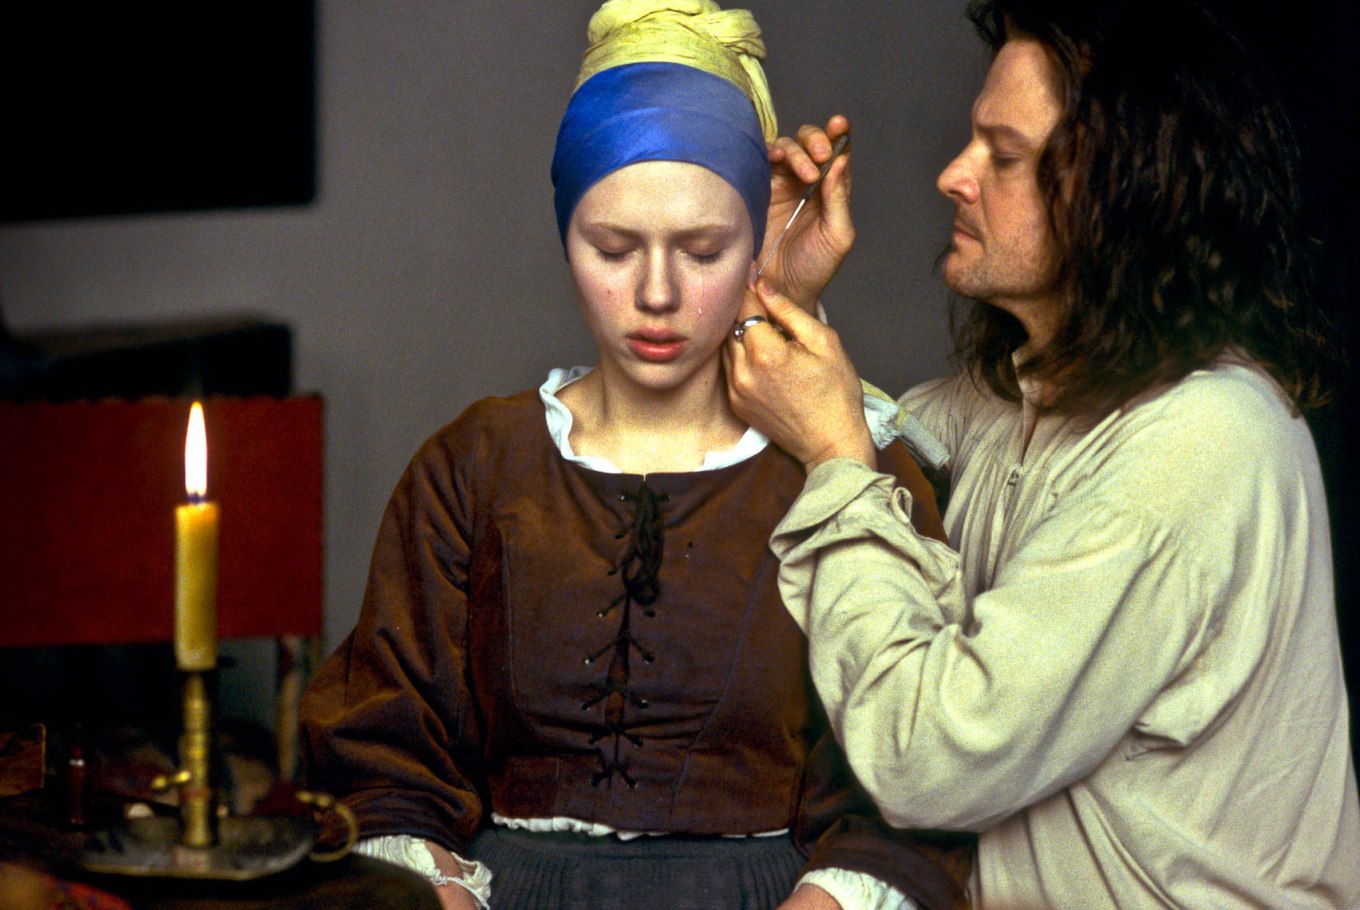 Stasera su Sky Arte il film “La ragazza con l'orecchino di perla” con Scarlett Johansson e Colin Firth